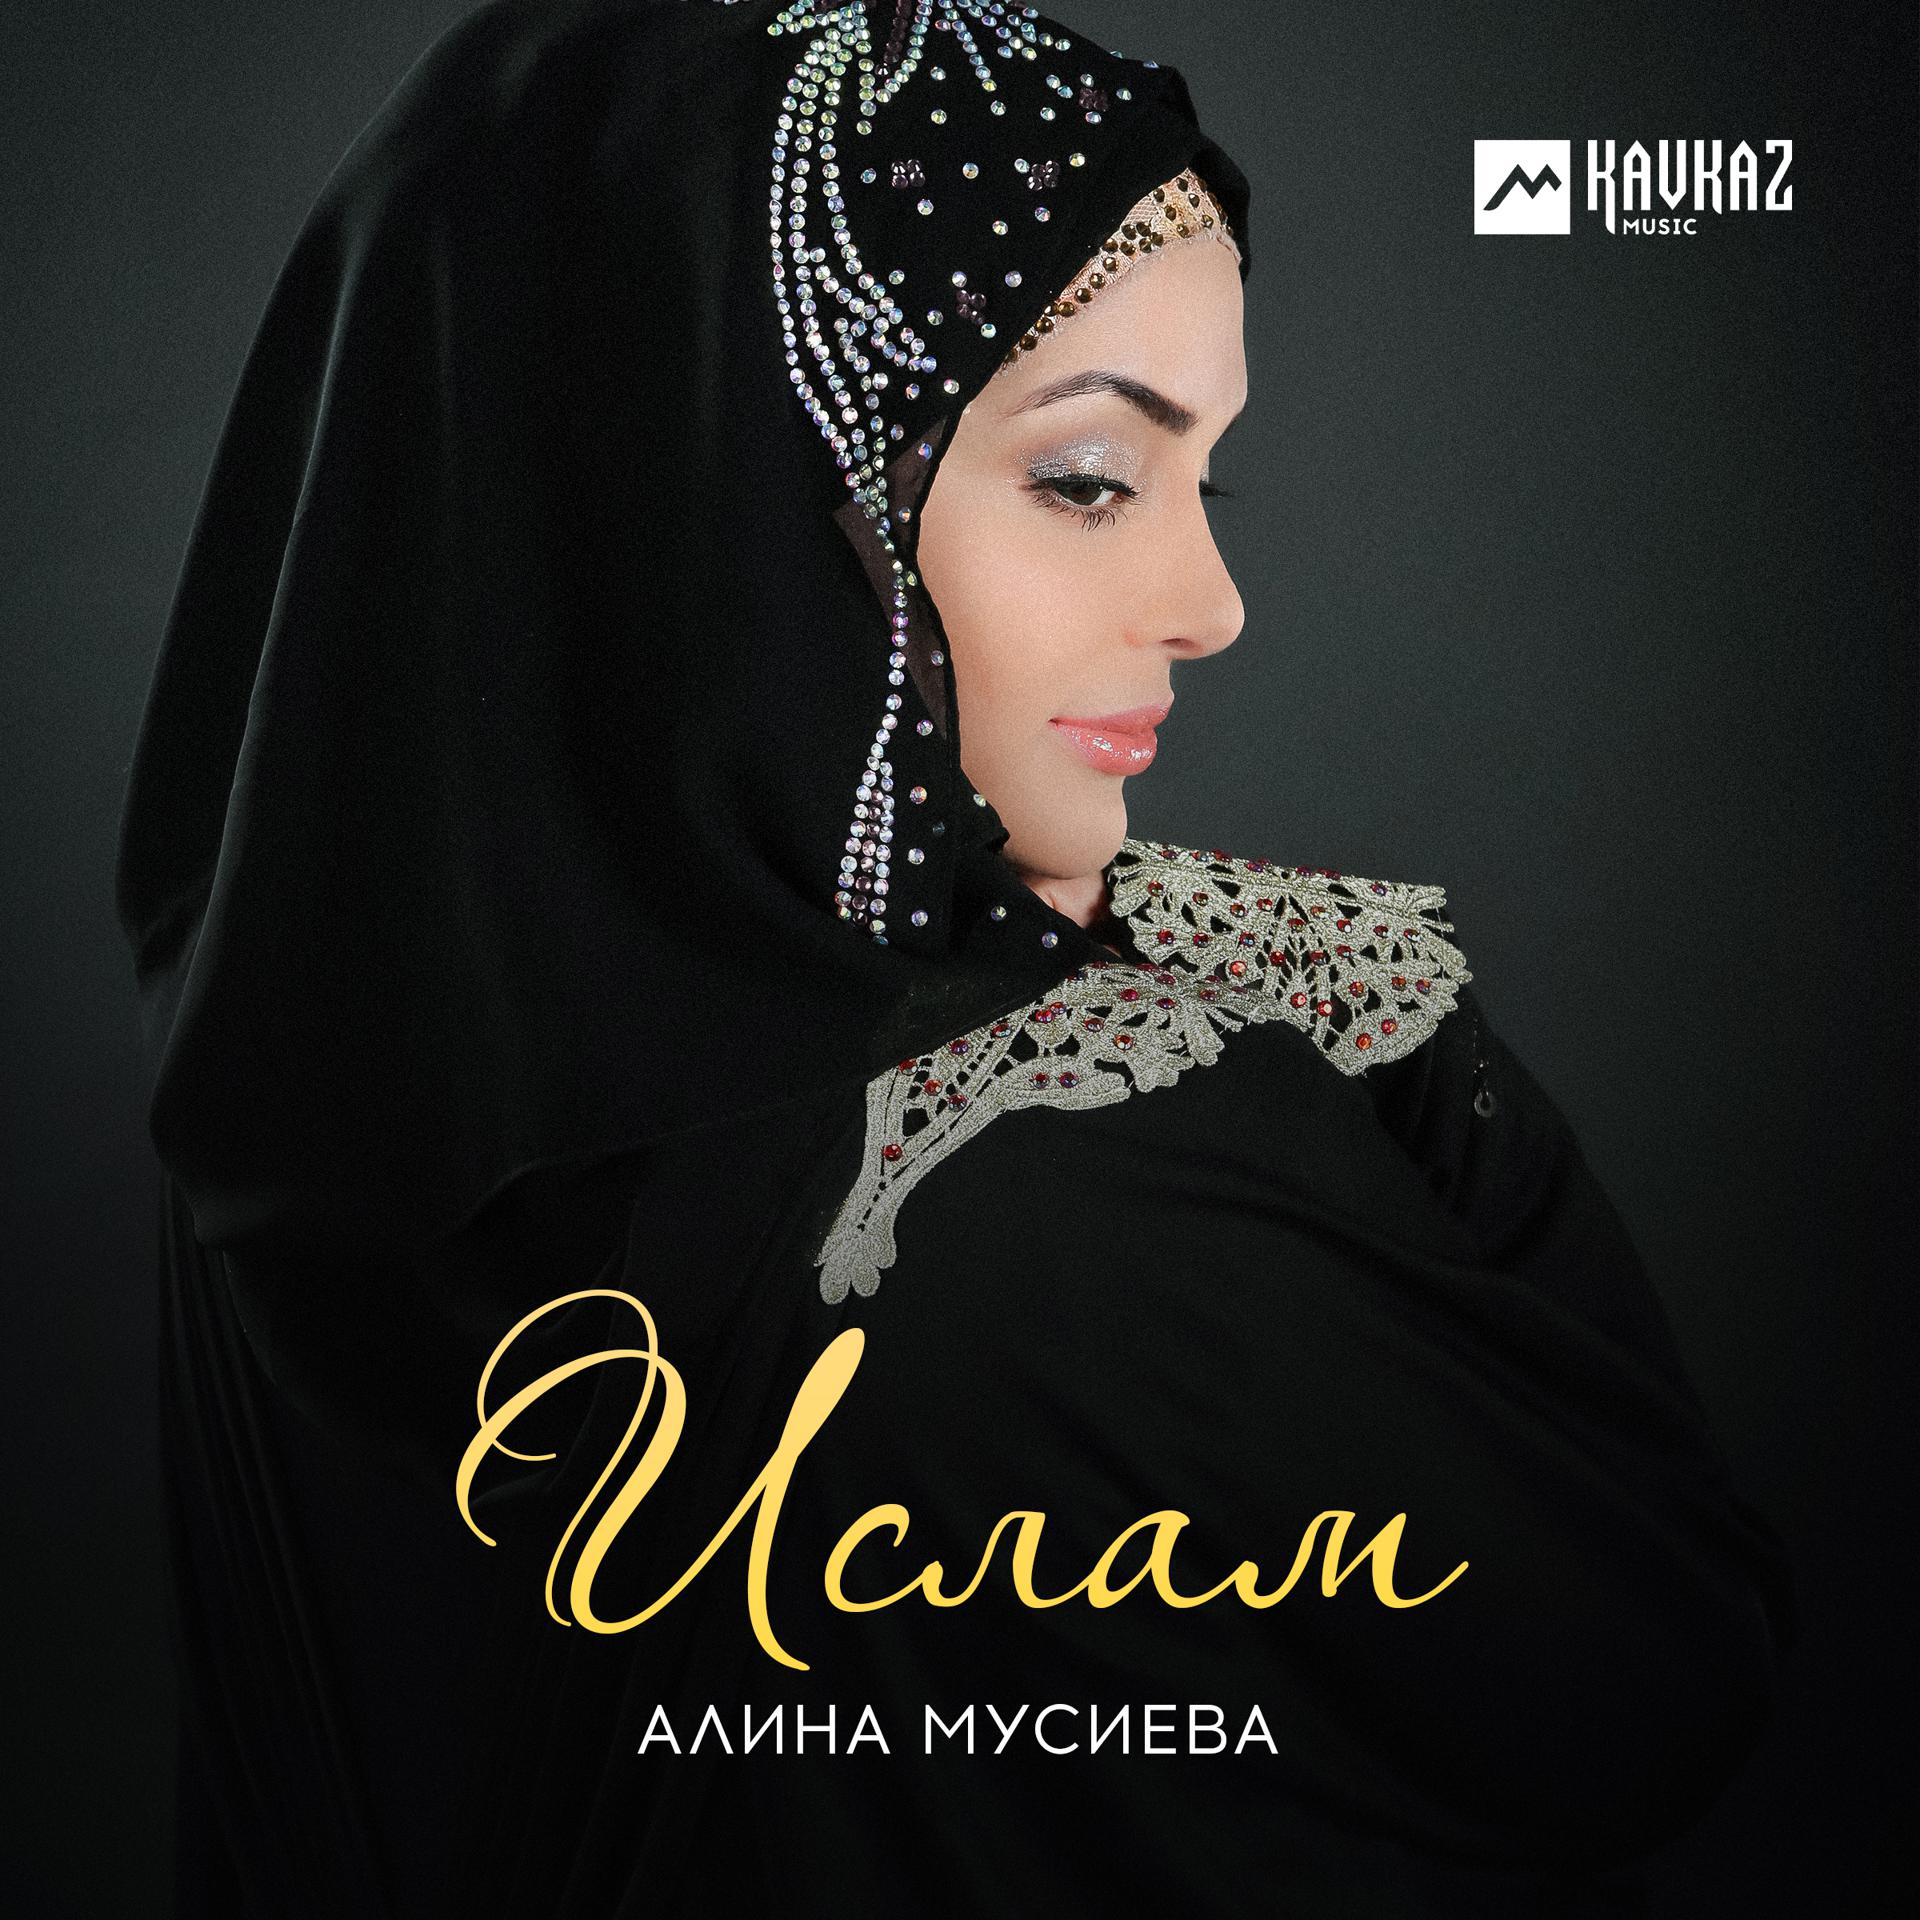 Бесплатные мусульманские песни. Альбом Ислама.